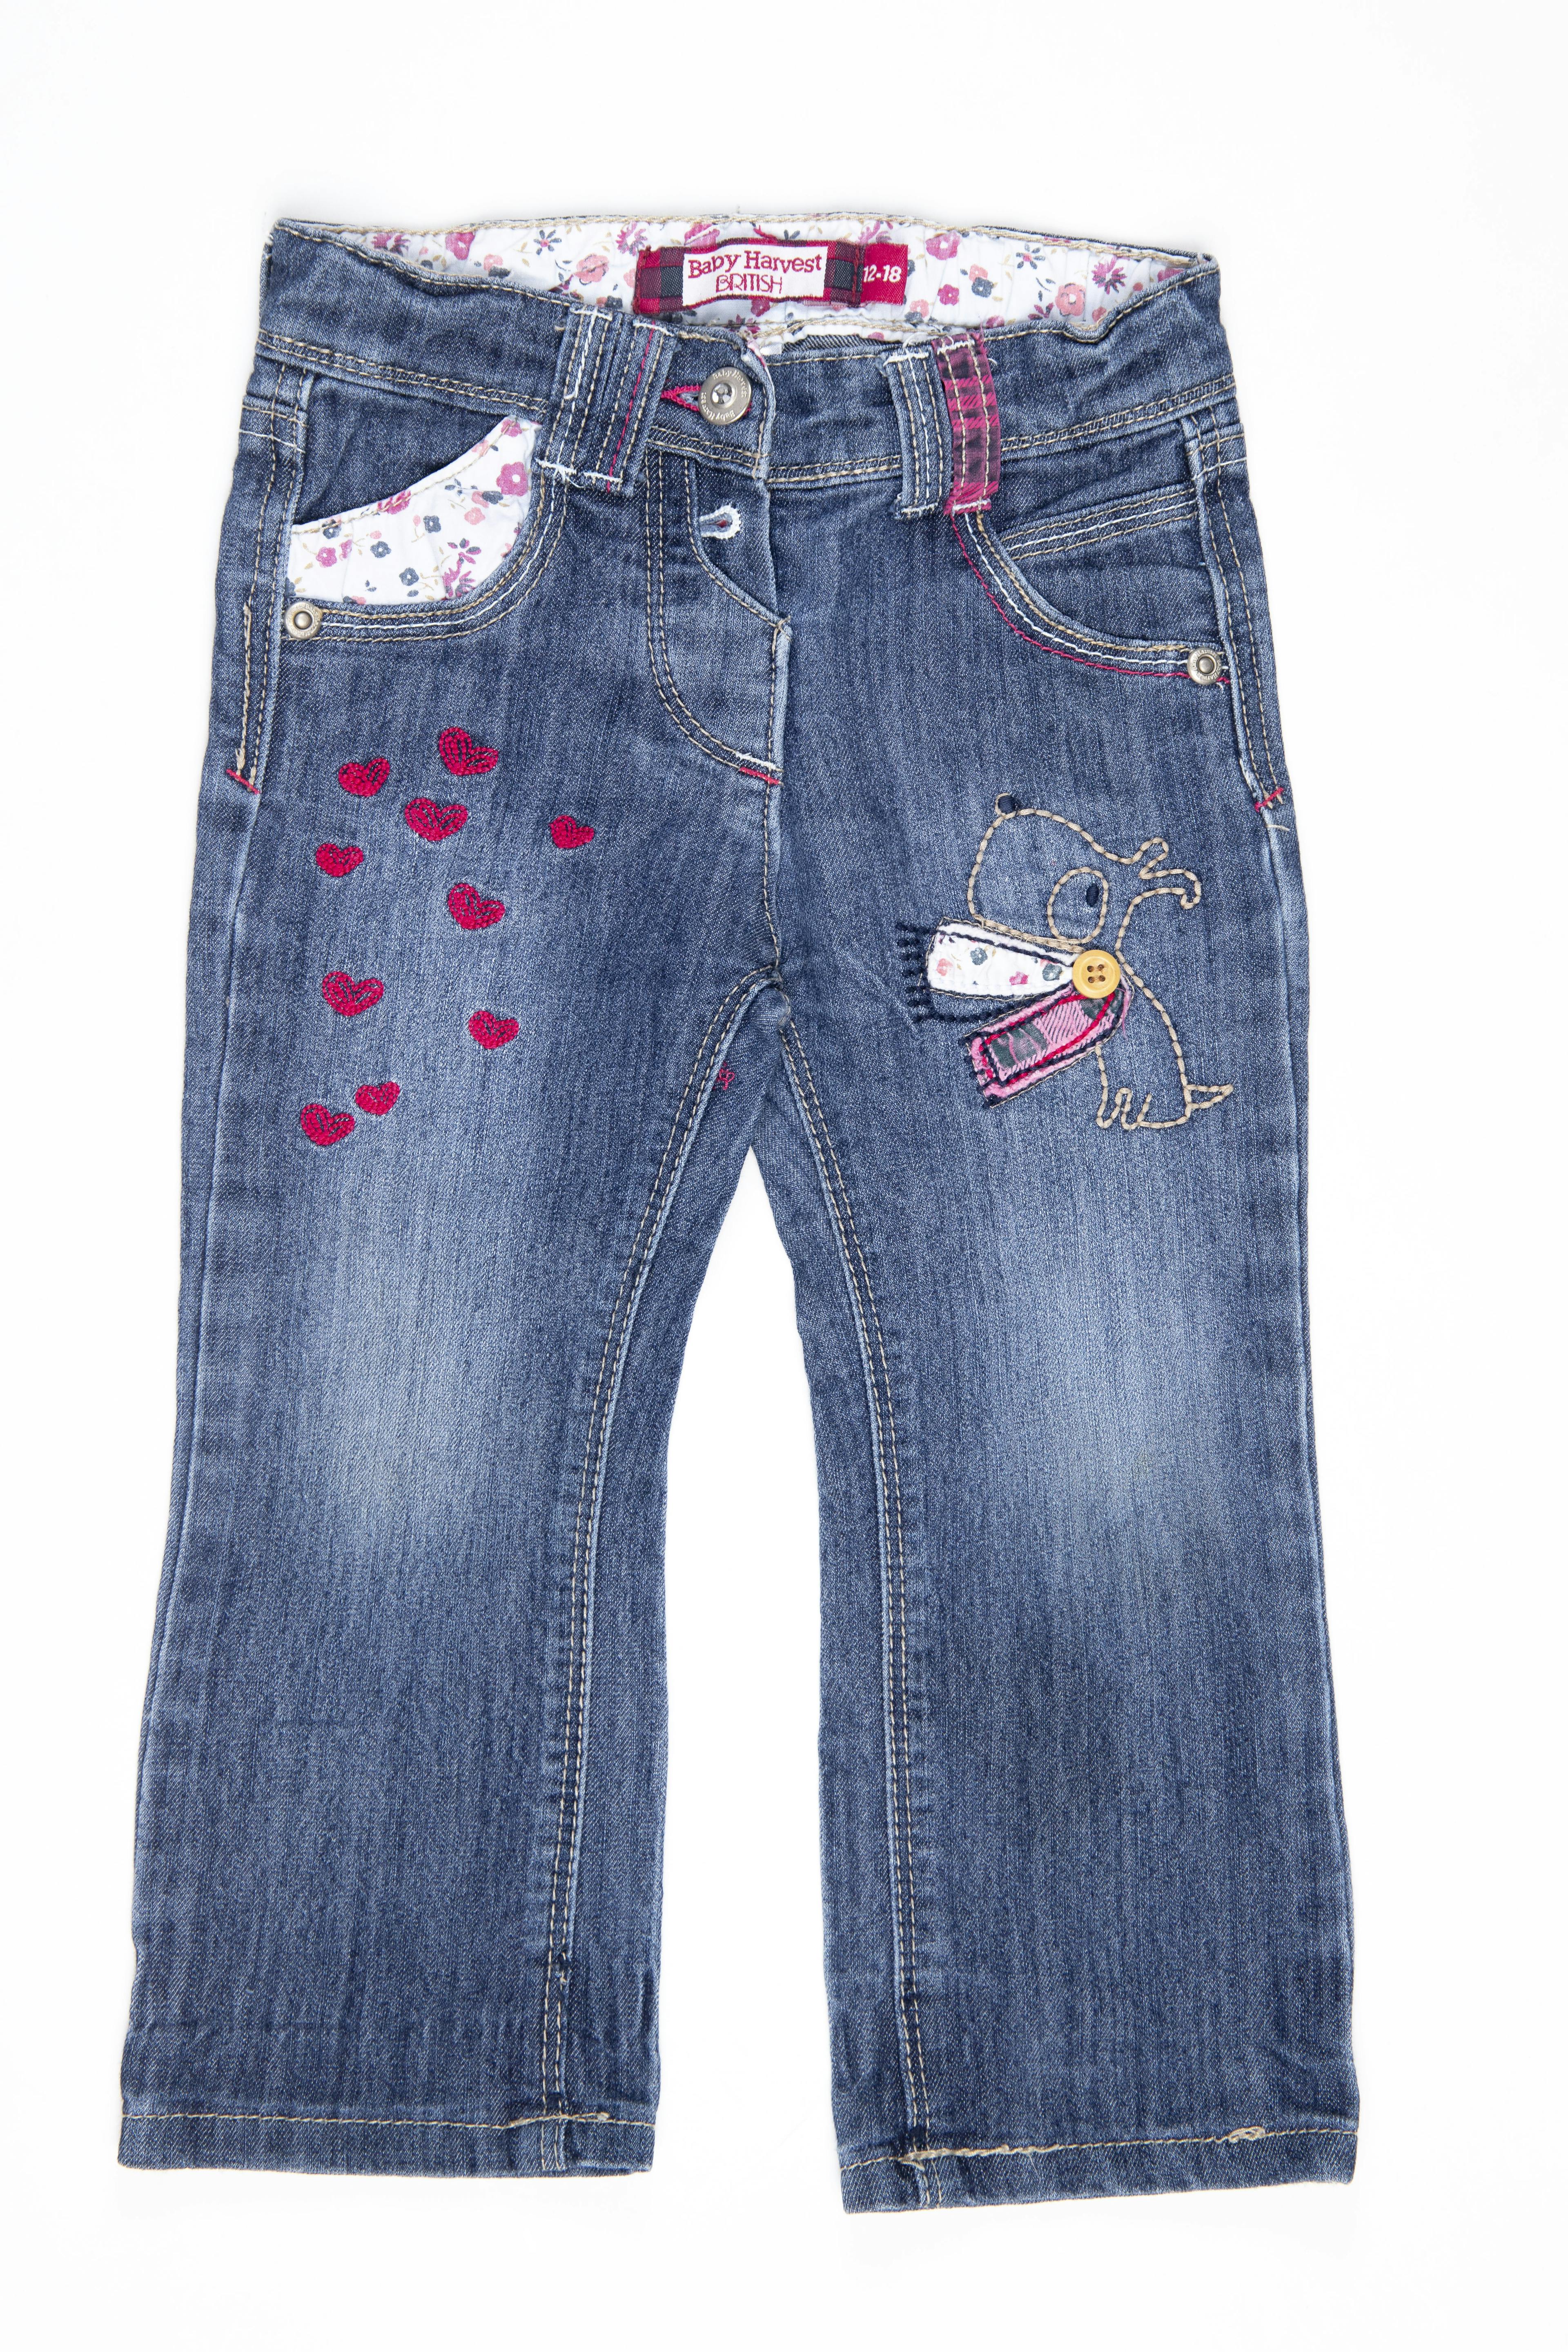 Jean con bordado y corazones cintura regulable - Harvest